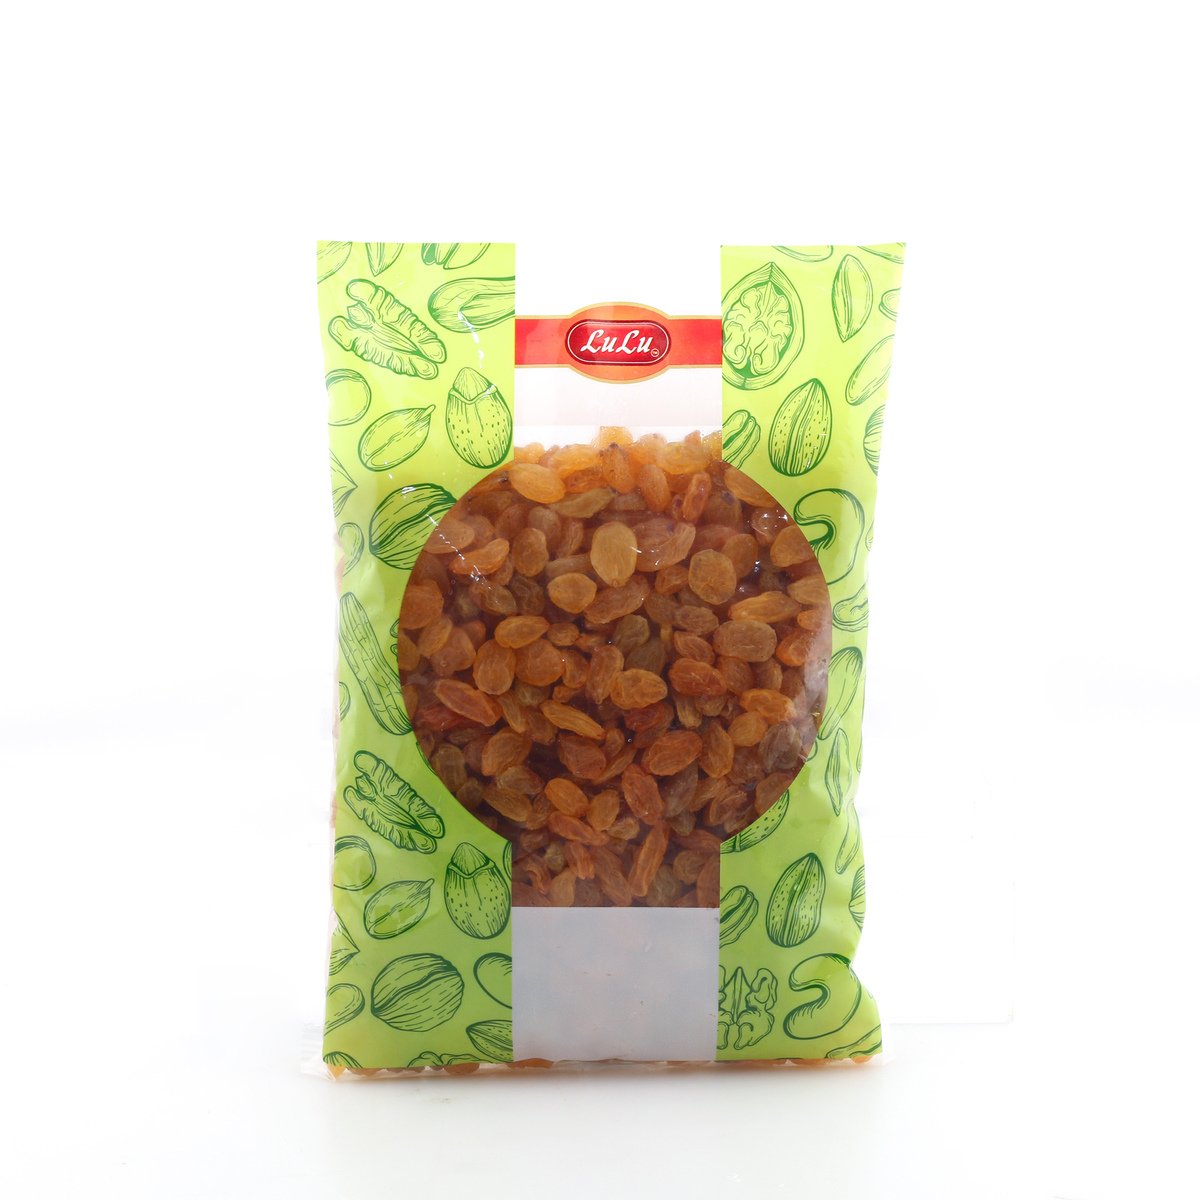 اشتري قم بشراء لولو الزبيب الذهبي 500 جم Online at Best Price من الموقع - من لولو هايبر ماركت Roastery Dried Fruit في السعودية